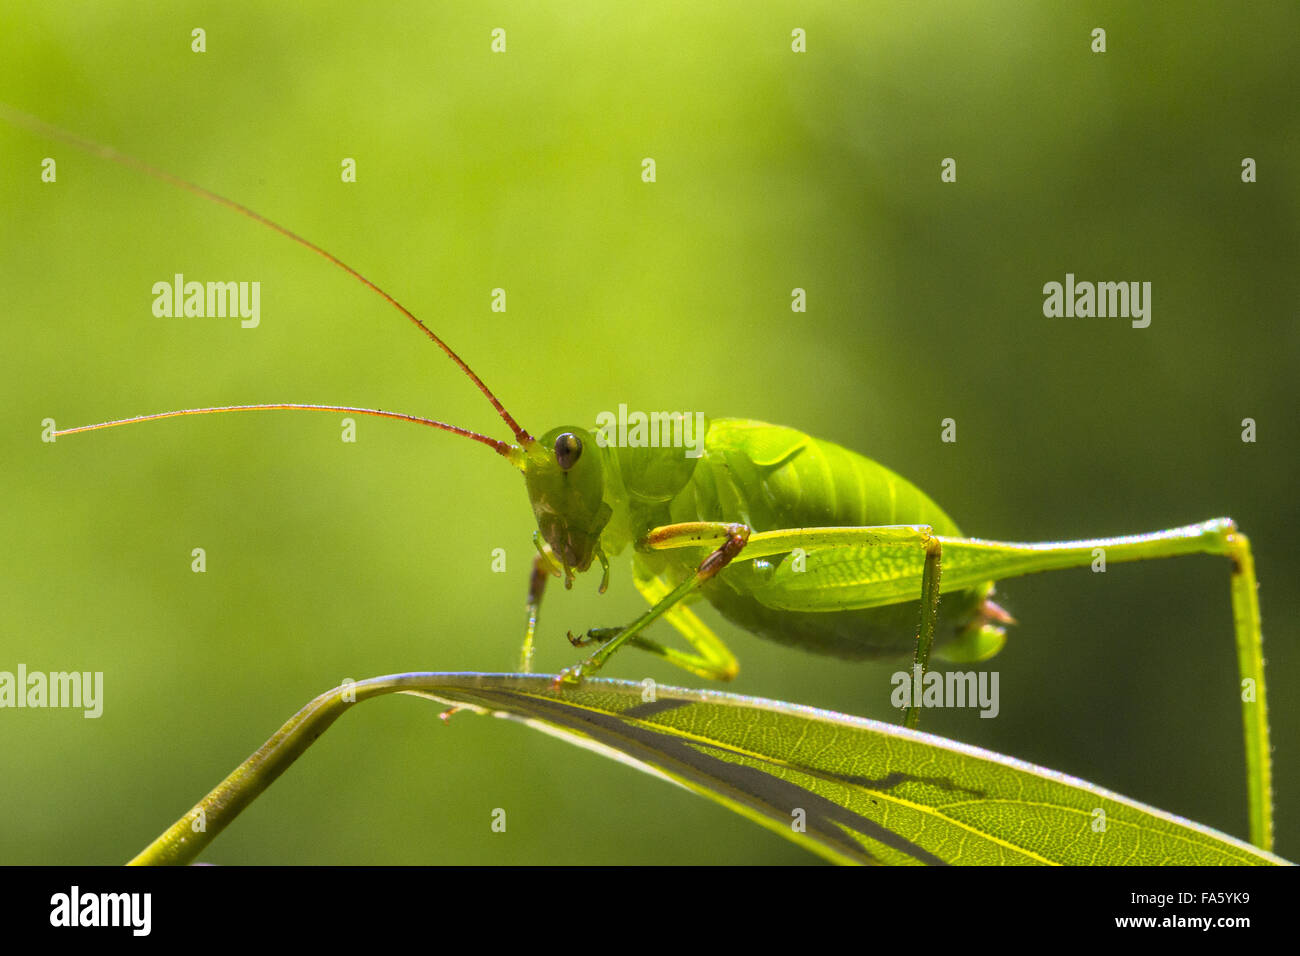 Long-horned grasshopper Stock Photo